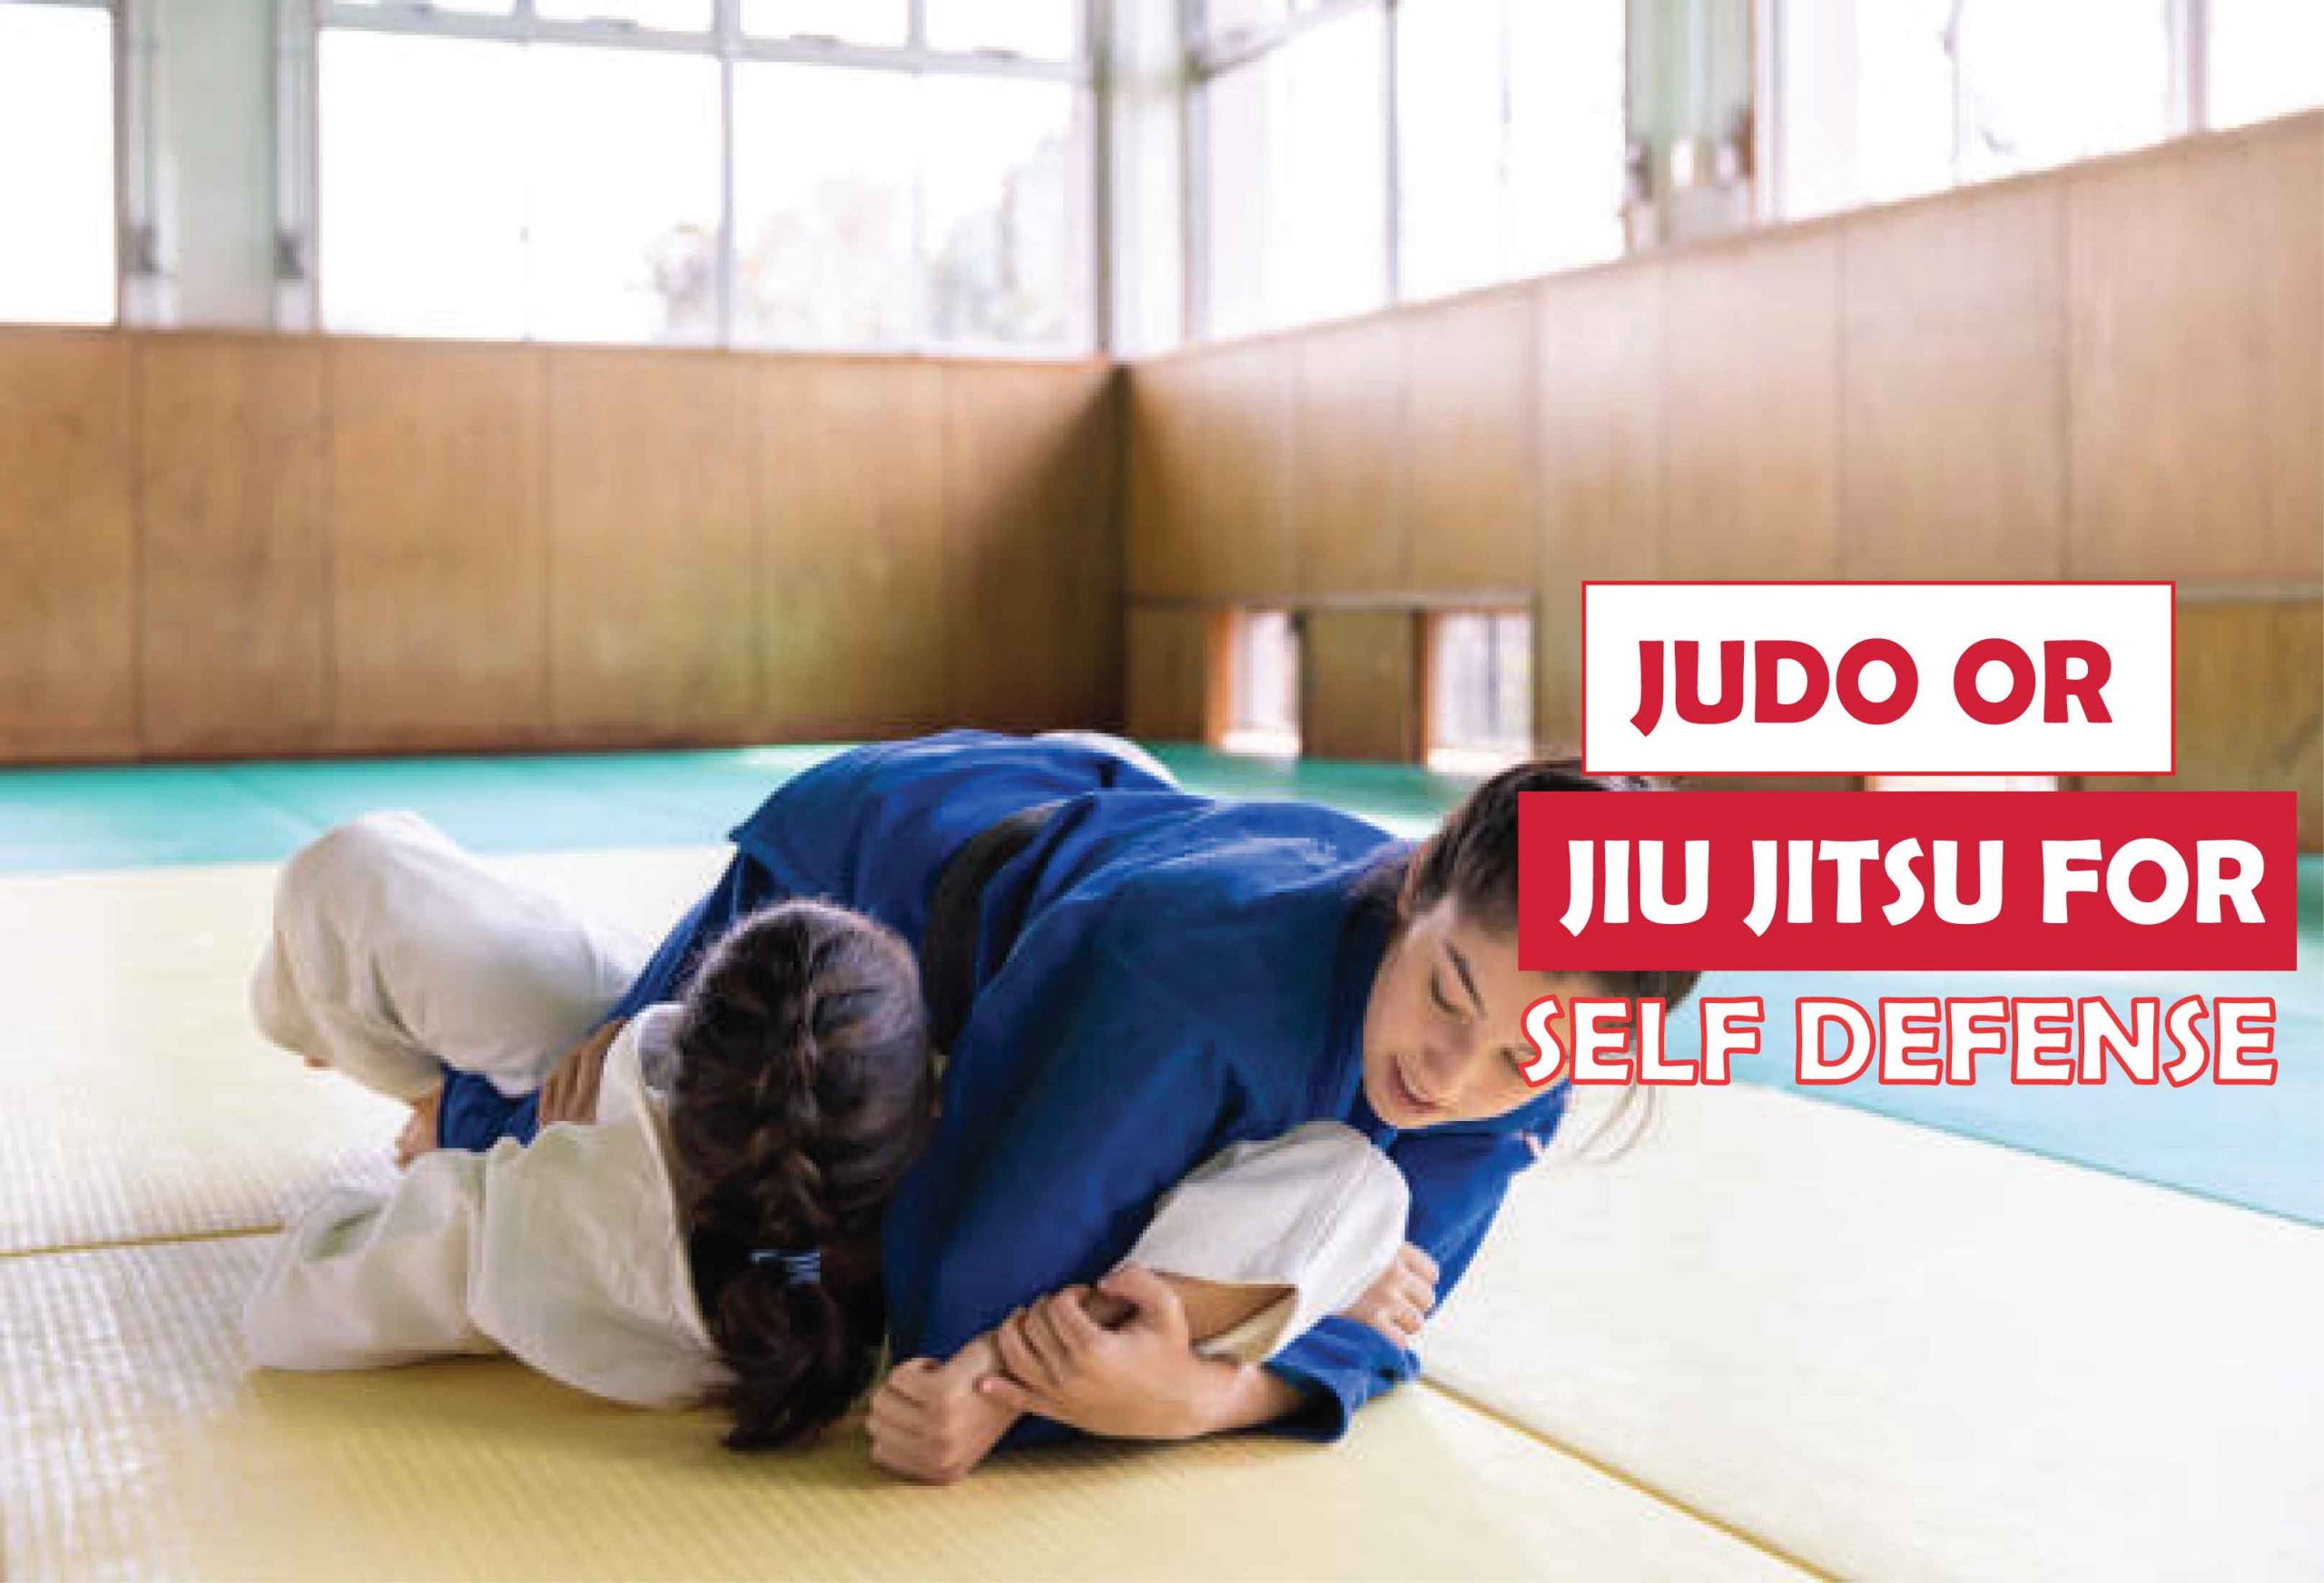 Judo or Jiu Jitsu for Self Defense